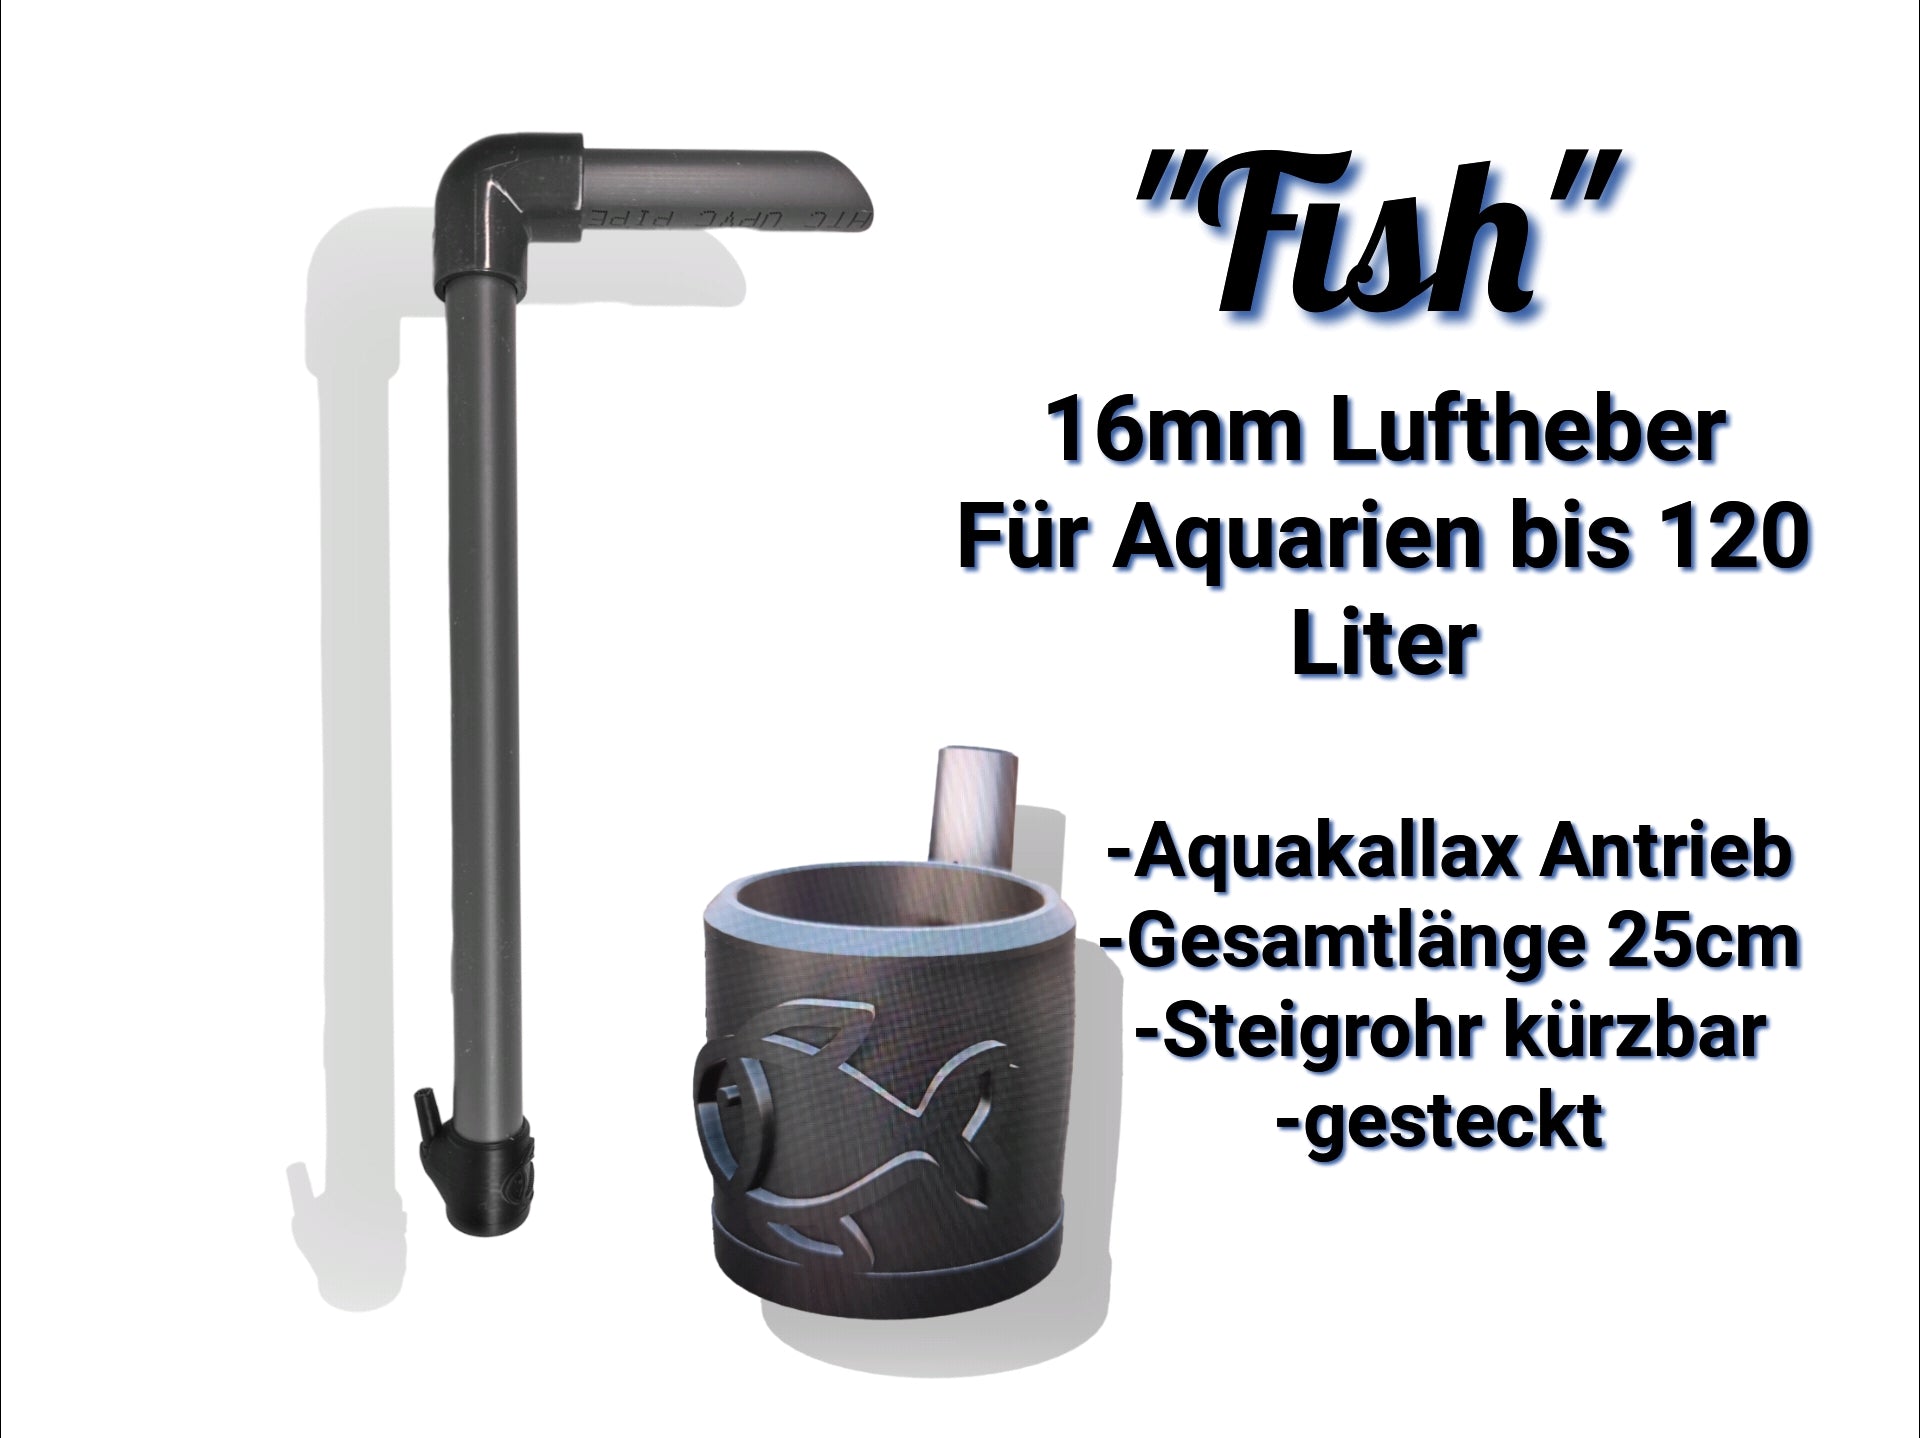 Der Aquakallax Luftheber mit 16mm "Fish" Antriebsteil. Für Aquarien bis 120 Liter geeignet. Gesamtlänge 25cm, kürzbares Steigrohr, gesteckte Version